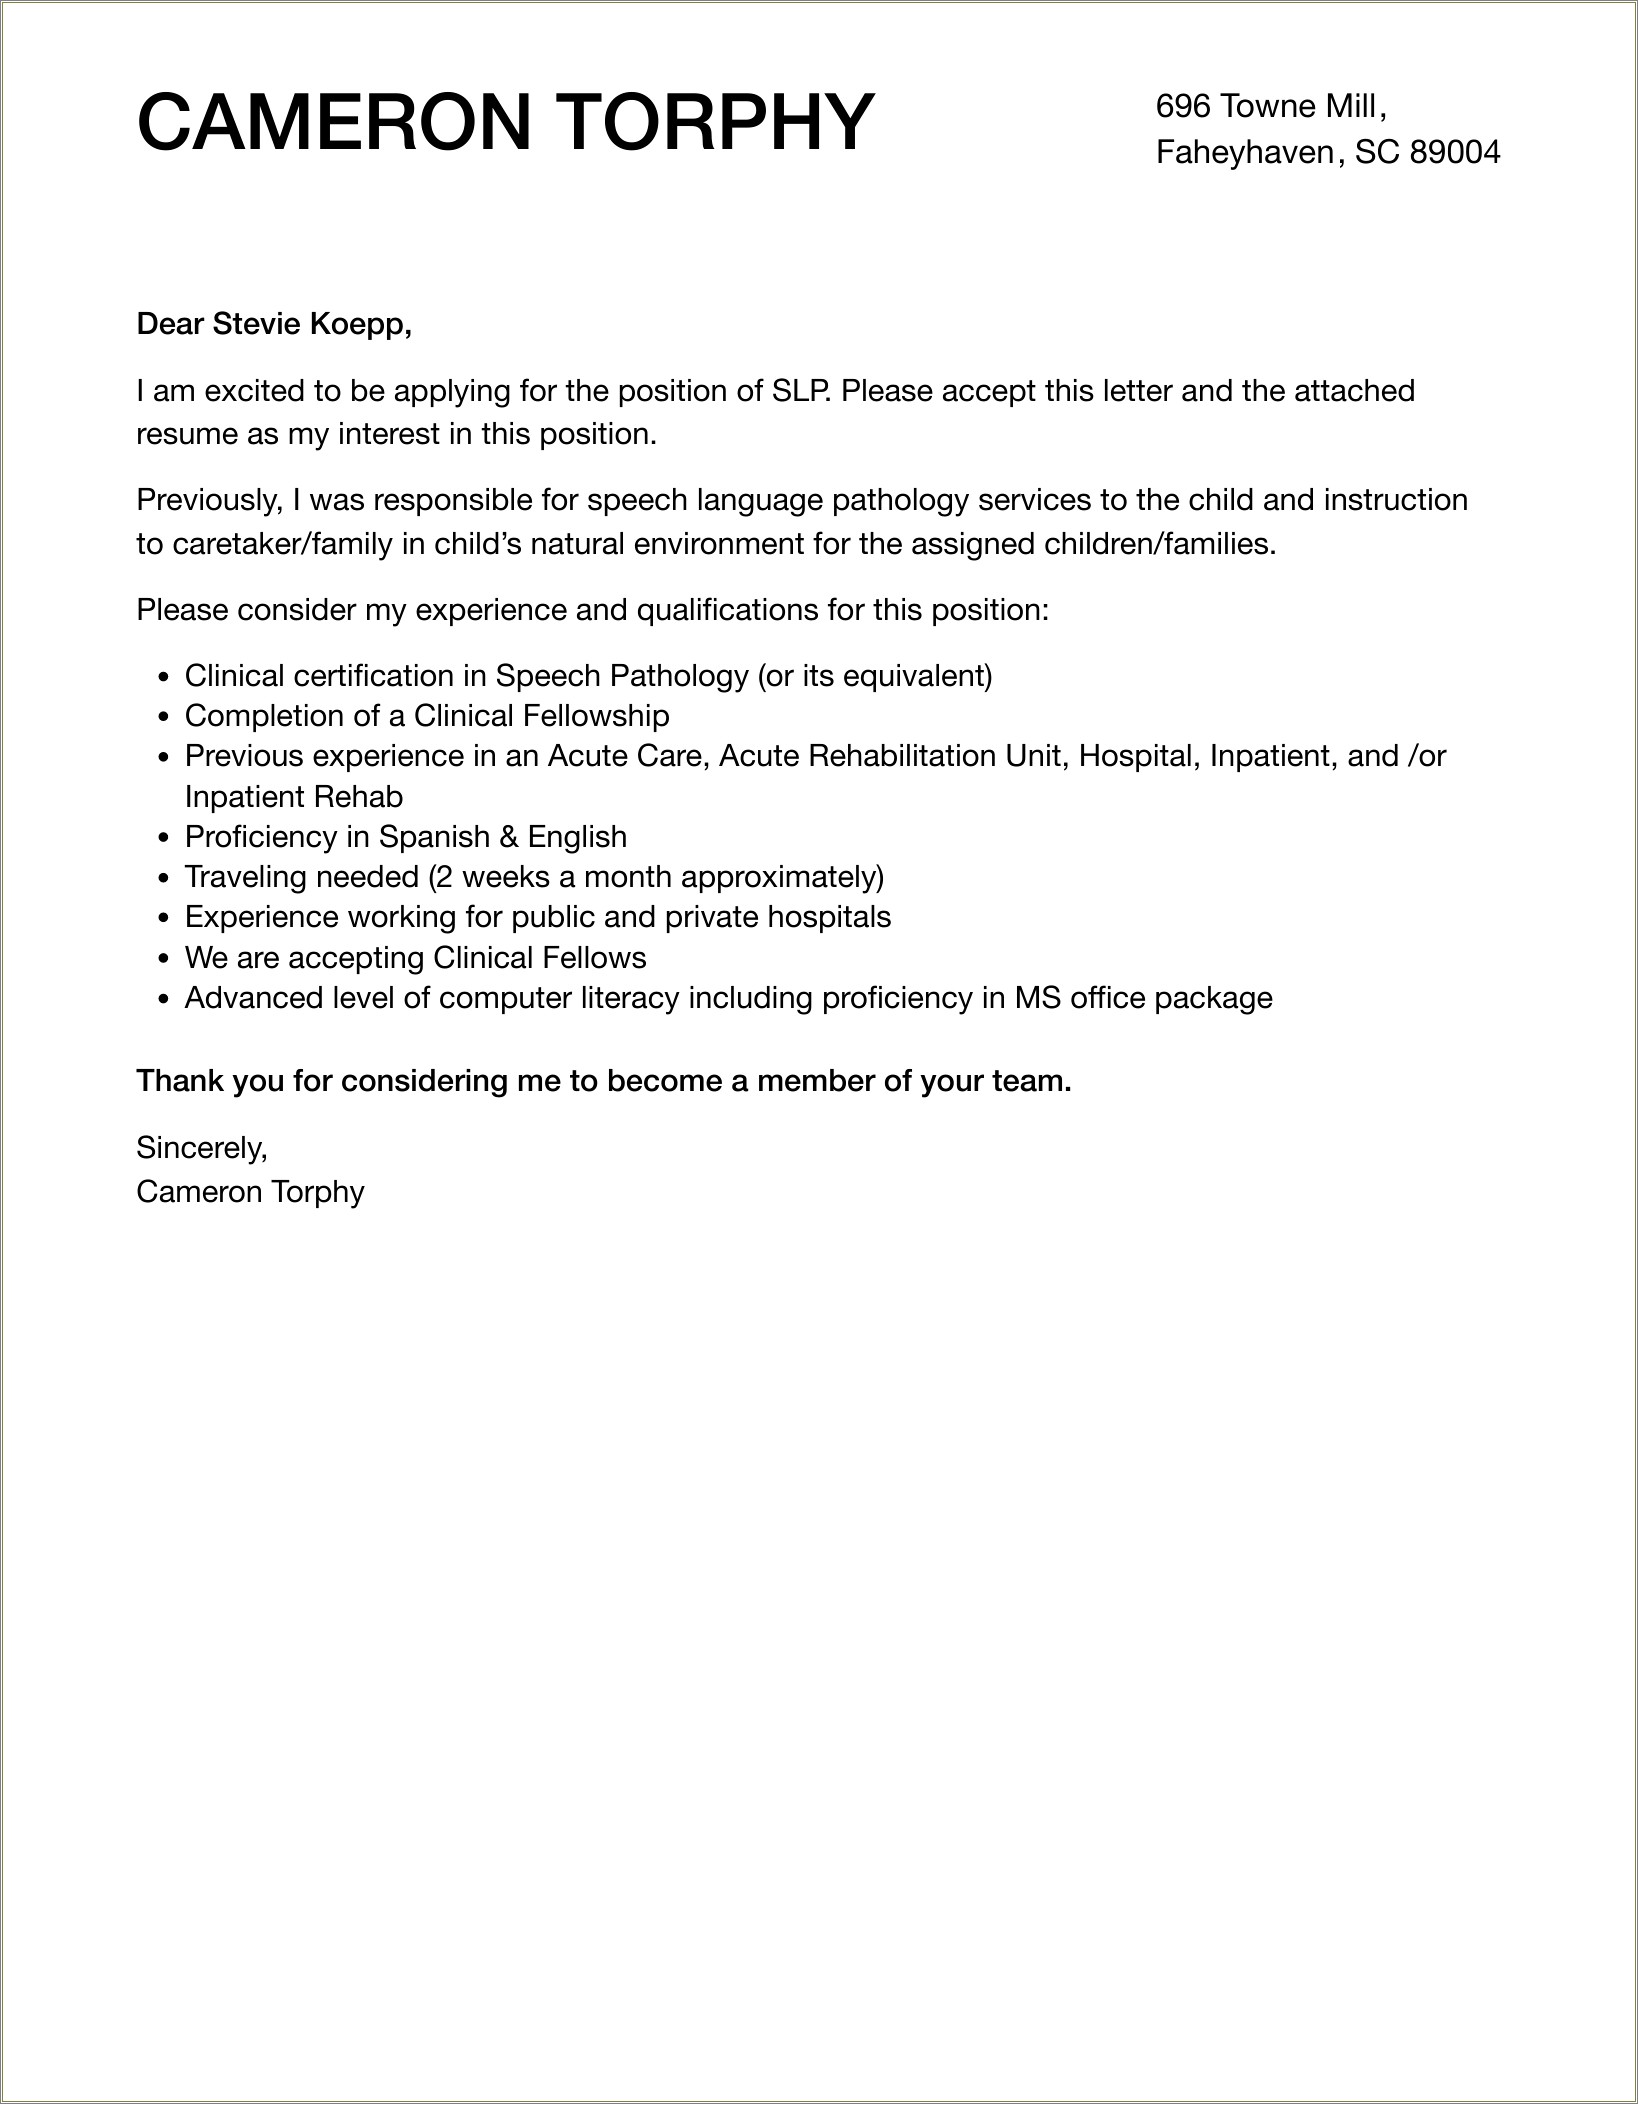 Sample Cover Letter For Slp Resume